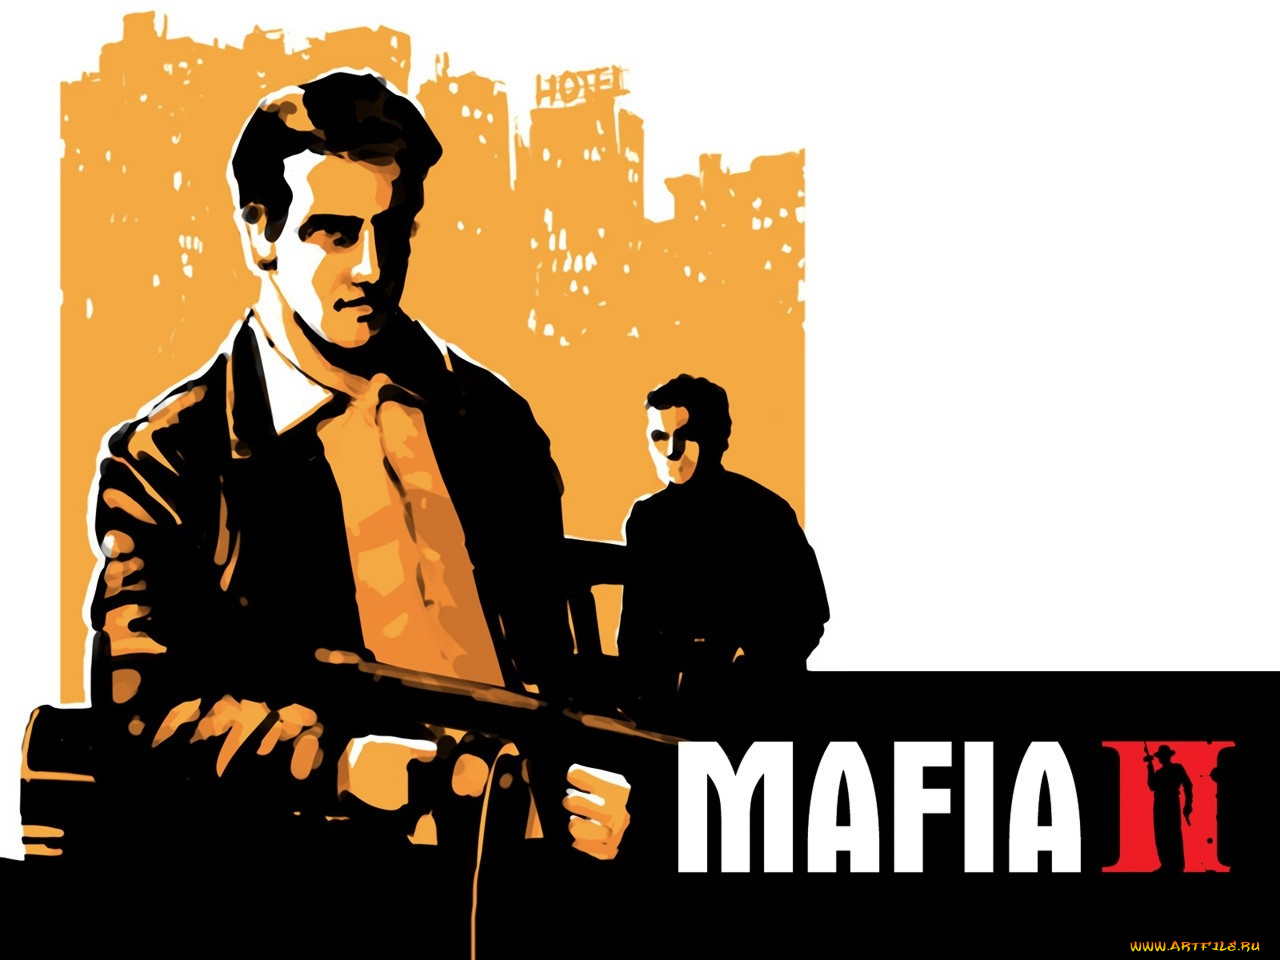 mafia, ii, видео, игры